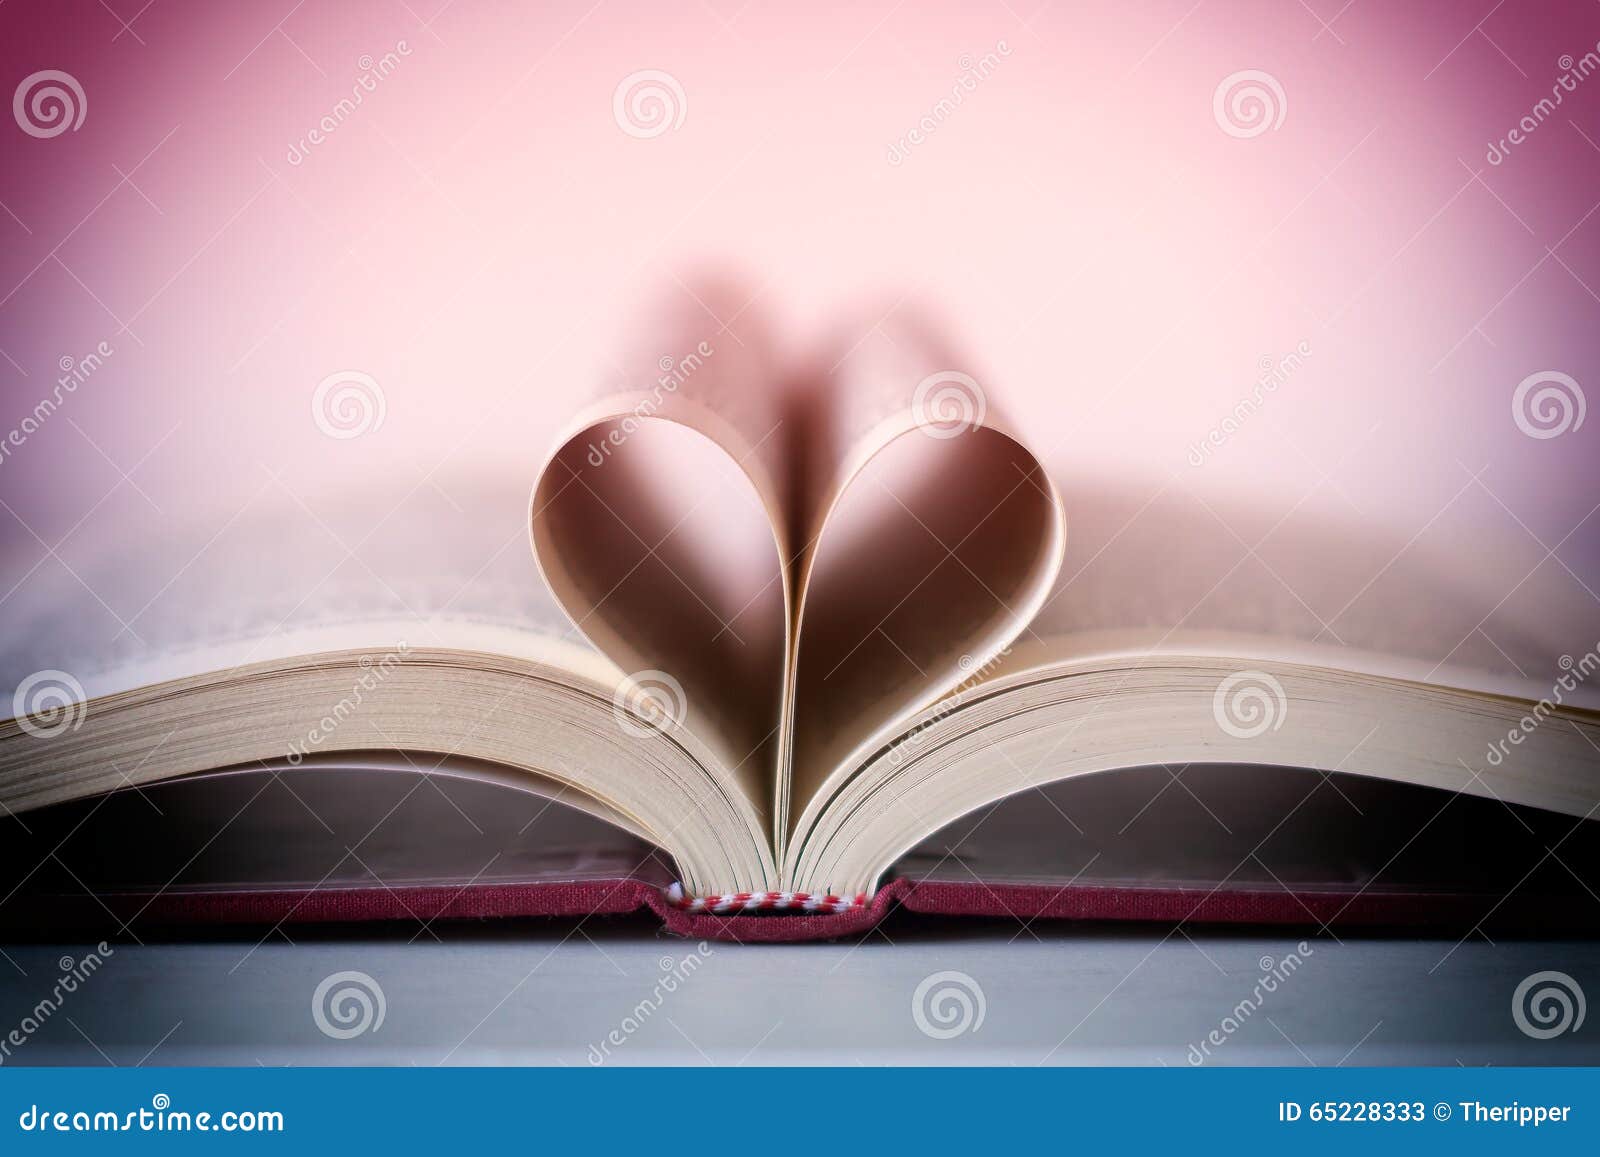 romance novel heart d